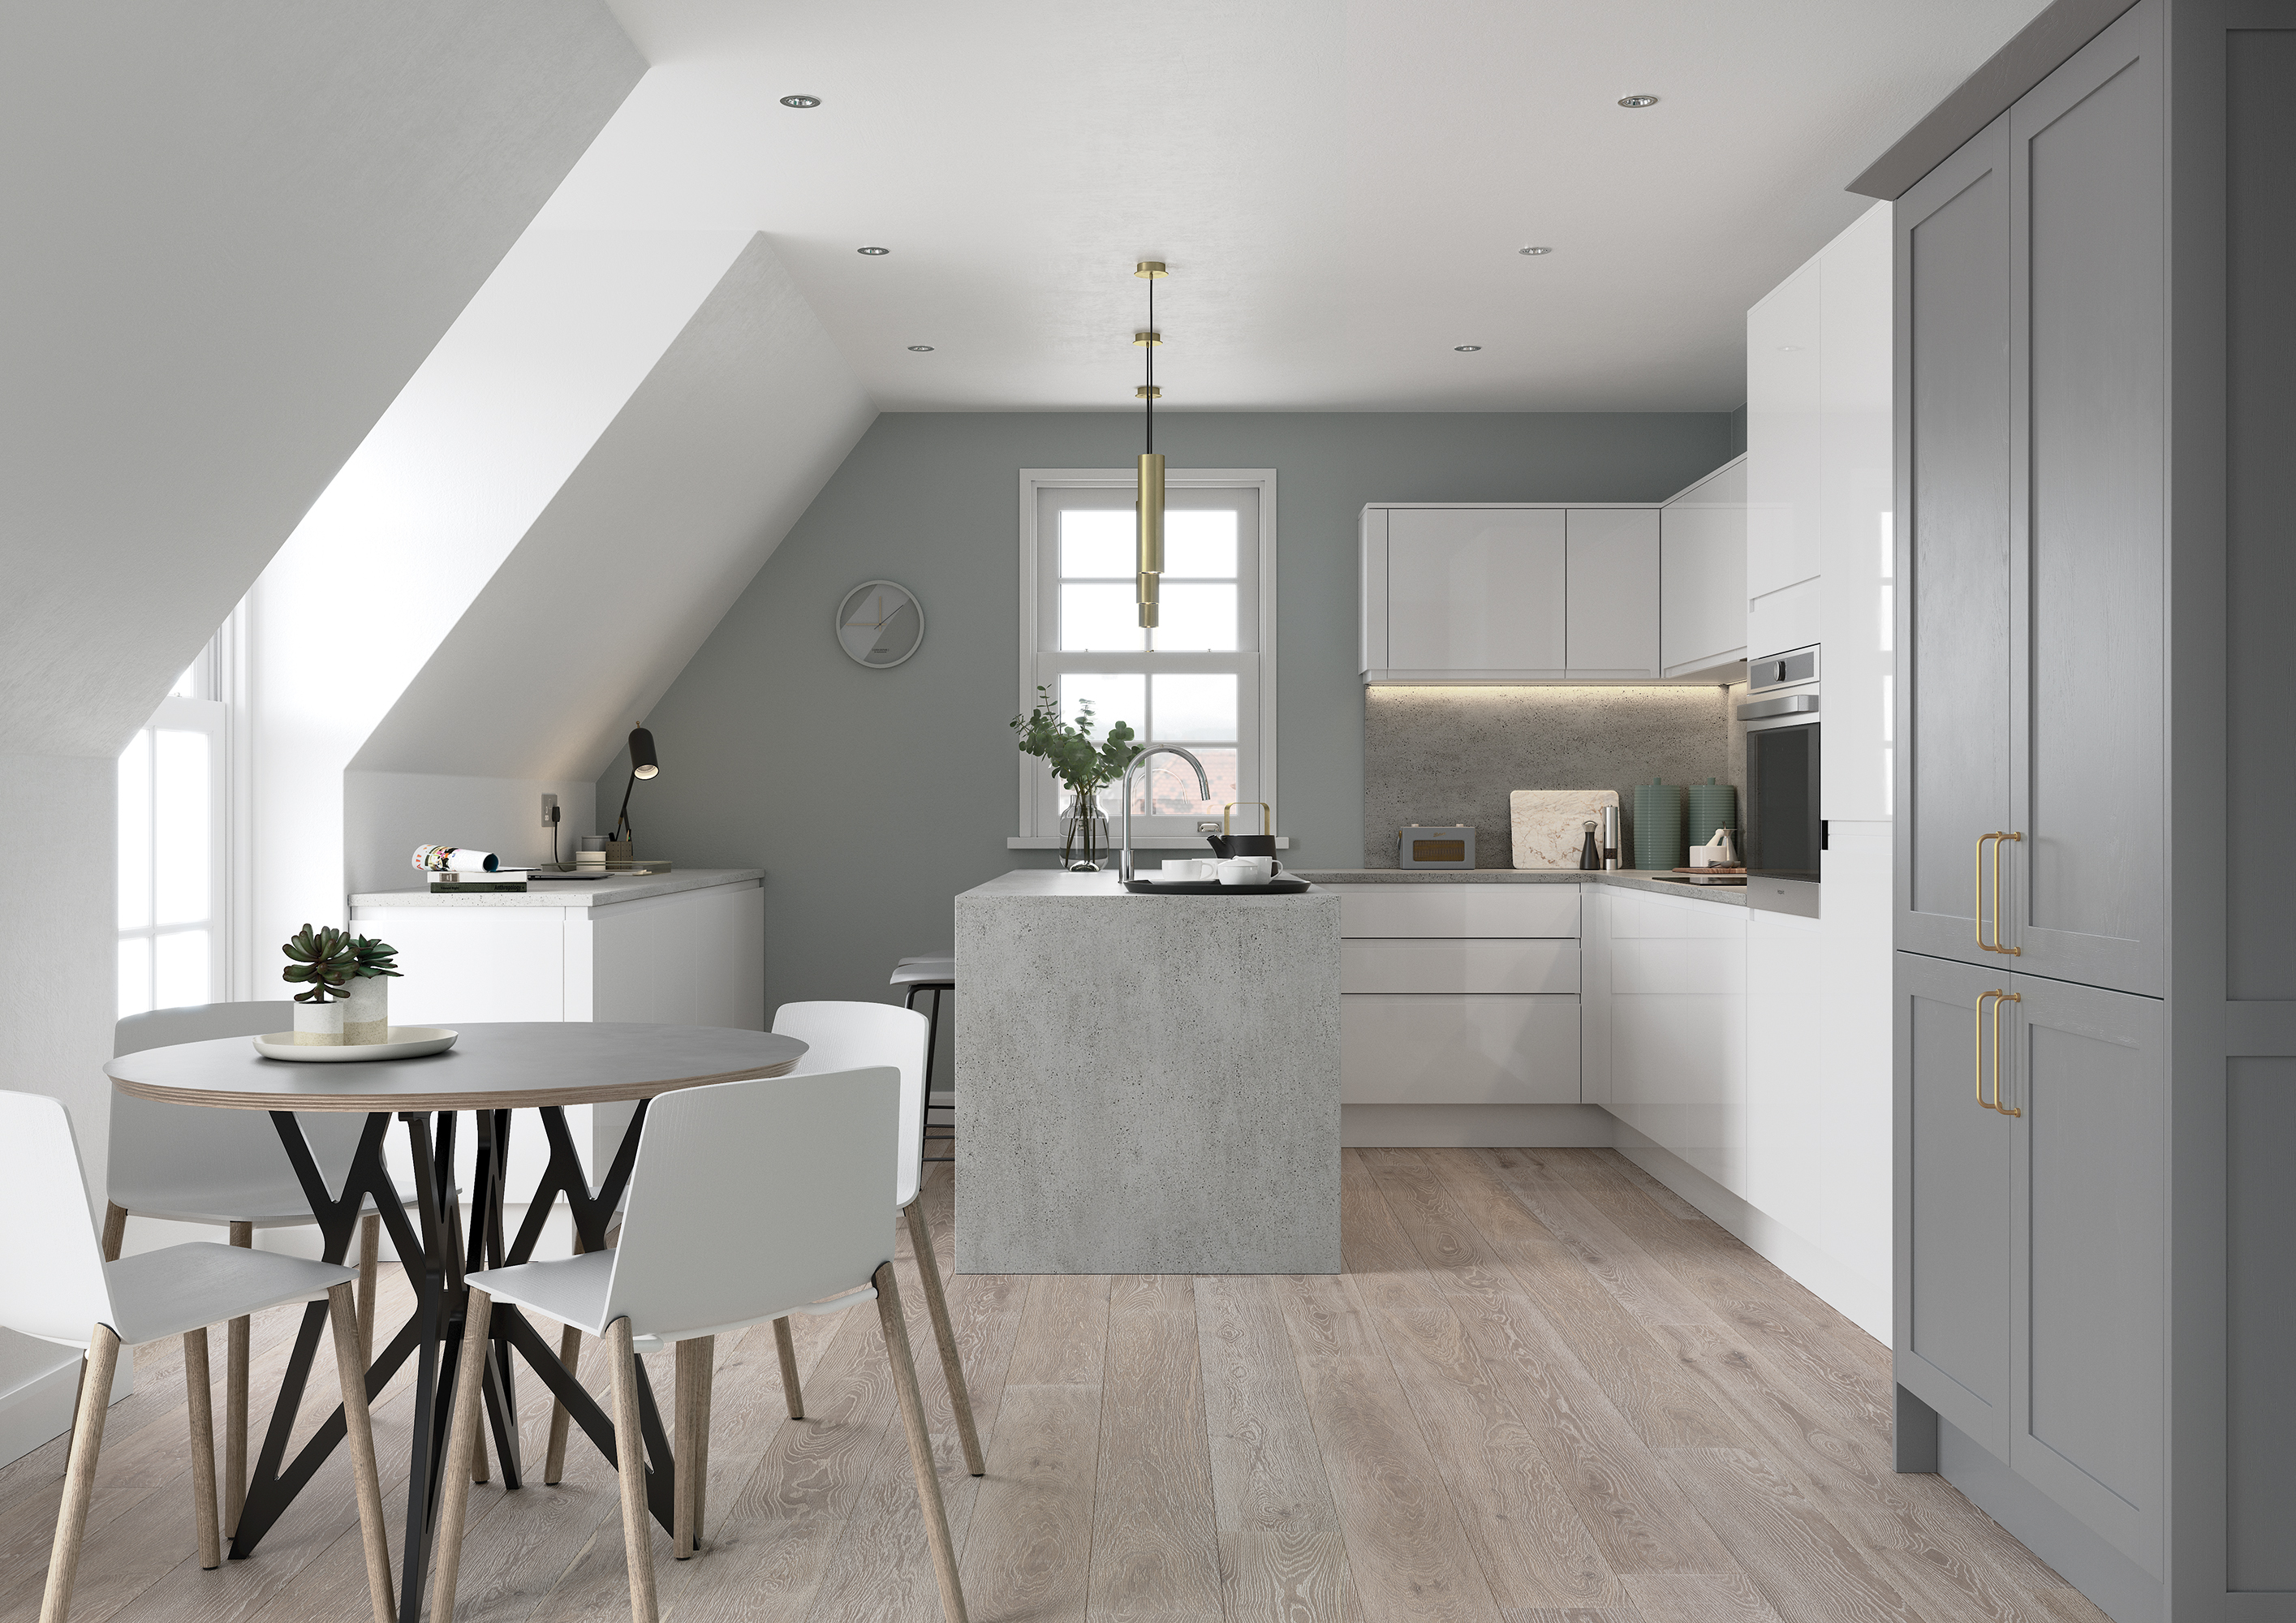 Kitchen Style:  Strada  |  Colour: Gloss White & Aldana Dust Grey